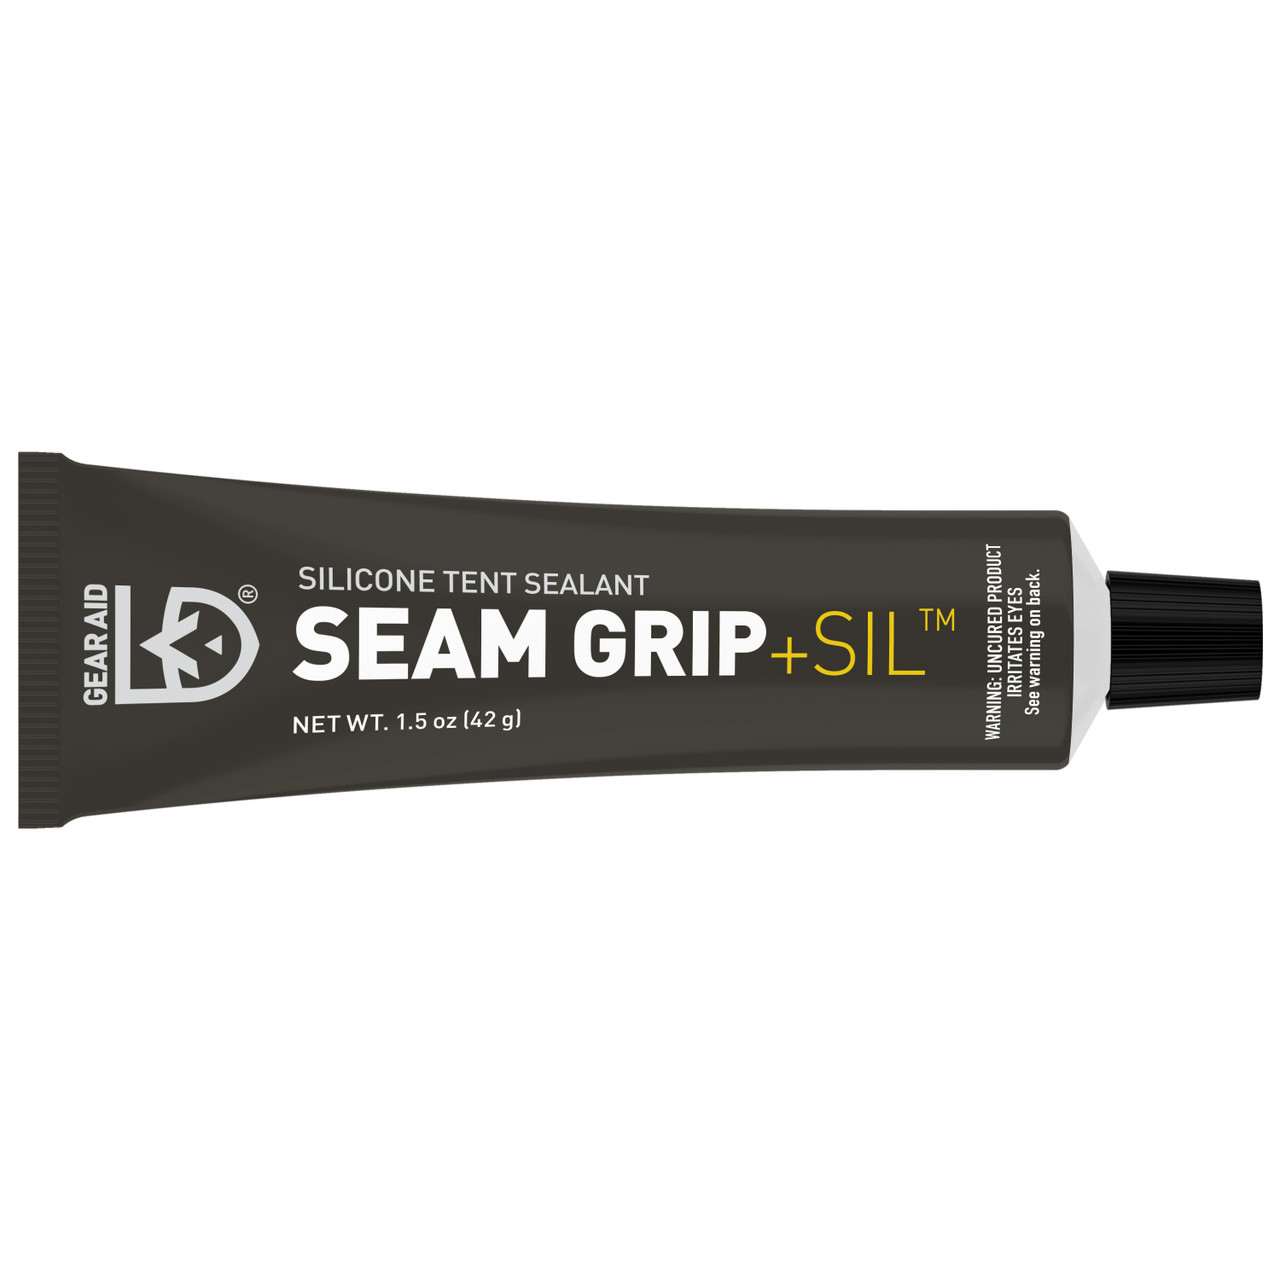 Seam Grip+Sil Silicone Tent Sealant 45ml NO_COLOUR